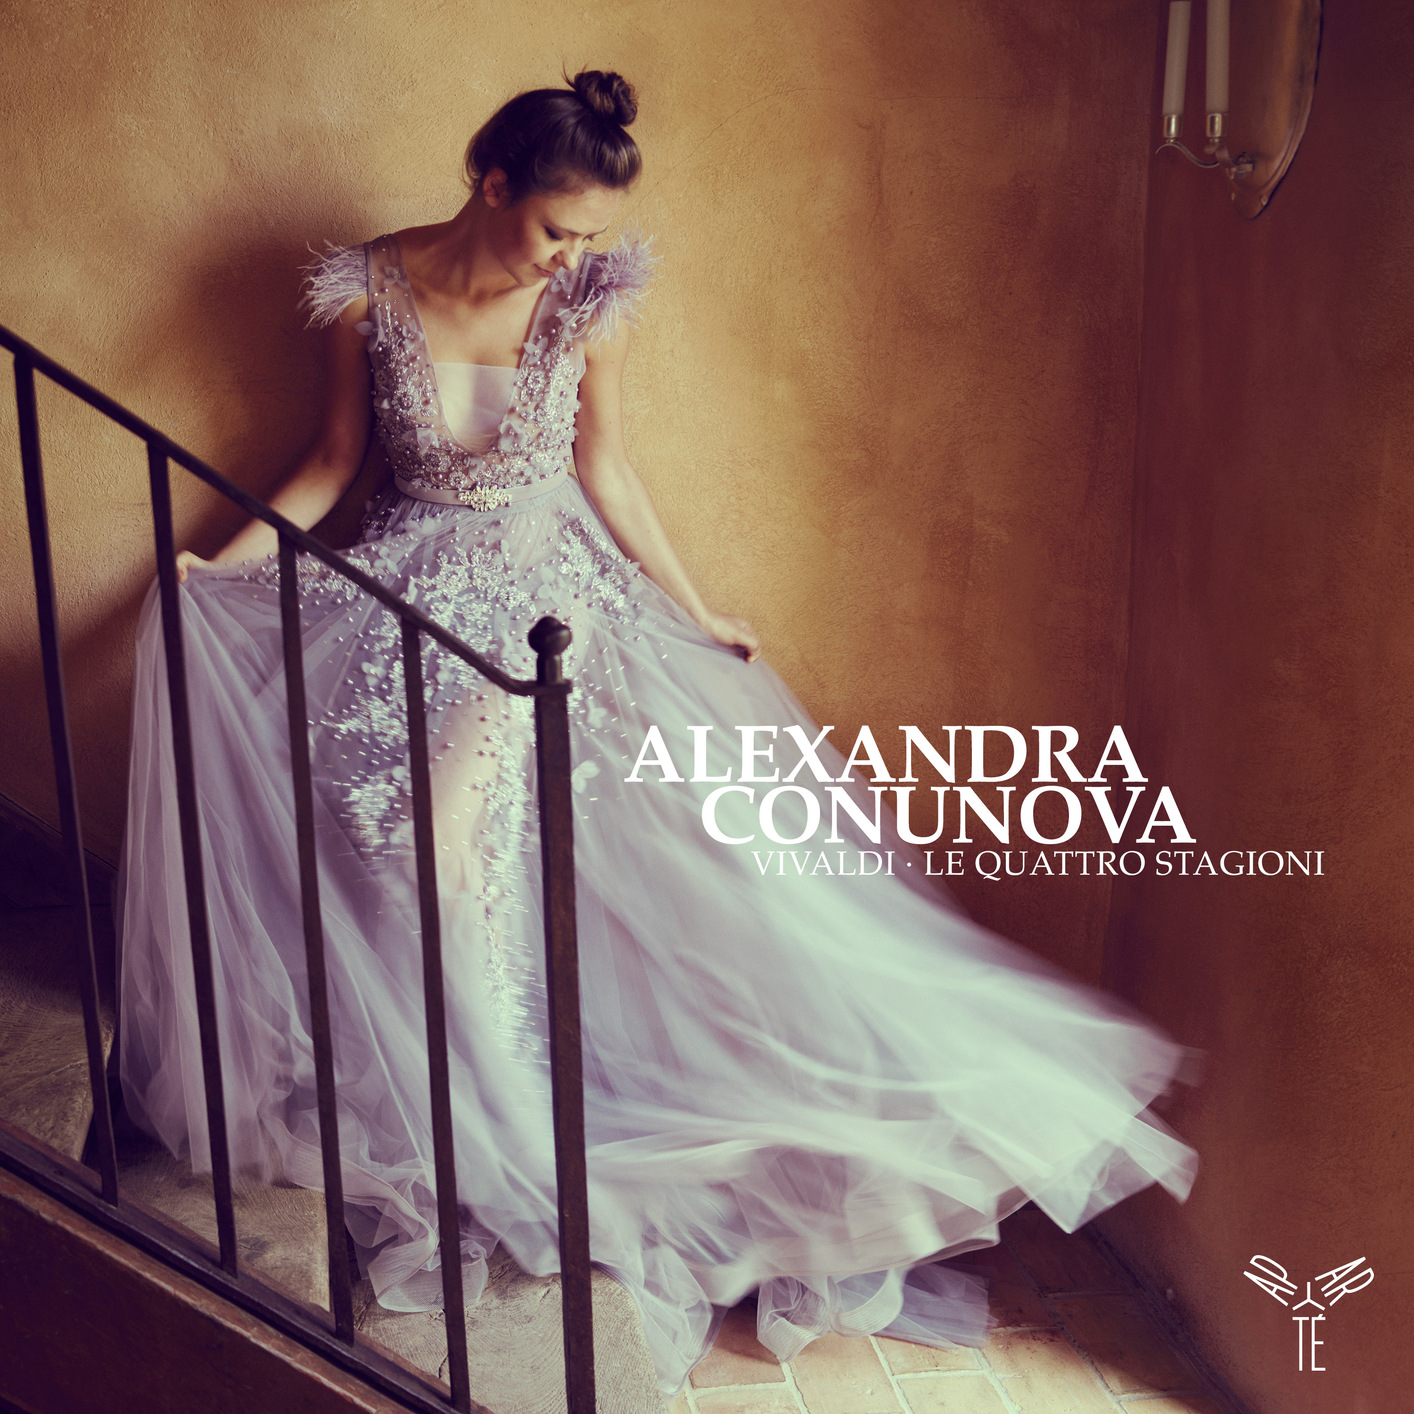 Alexandra Conunova – Vivaldi – Le Quattro Stagioni (2020) [FLAC 24bit/96kHz]